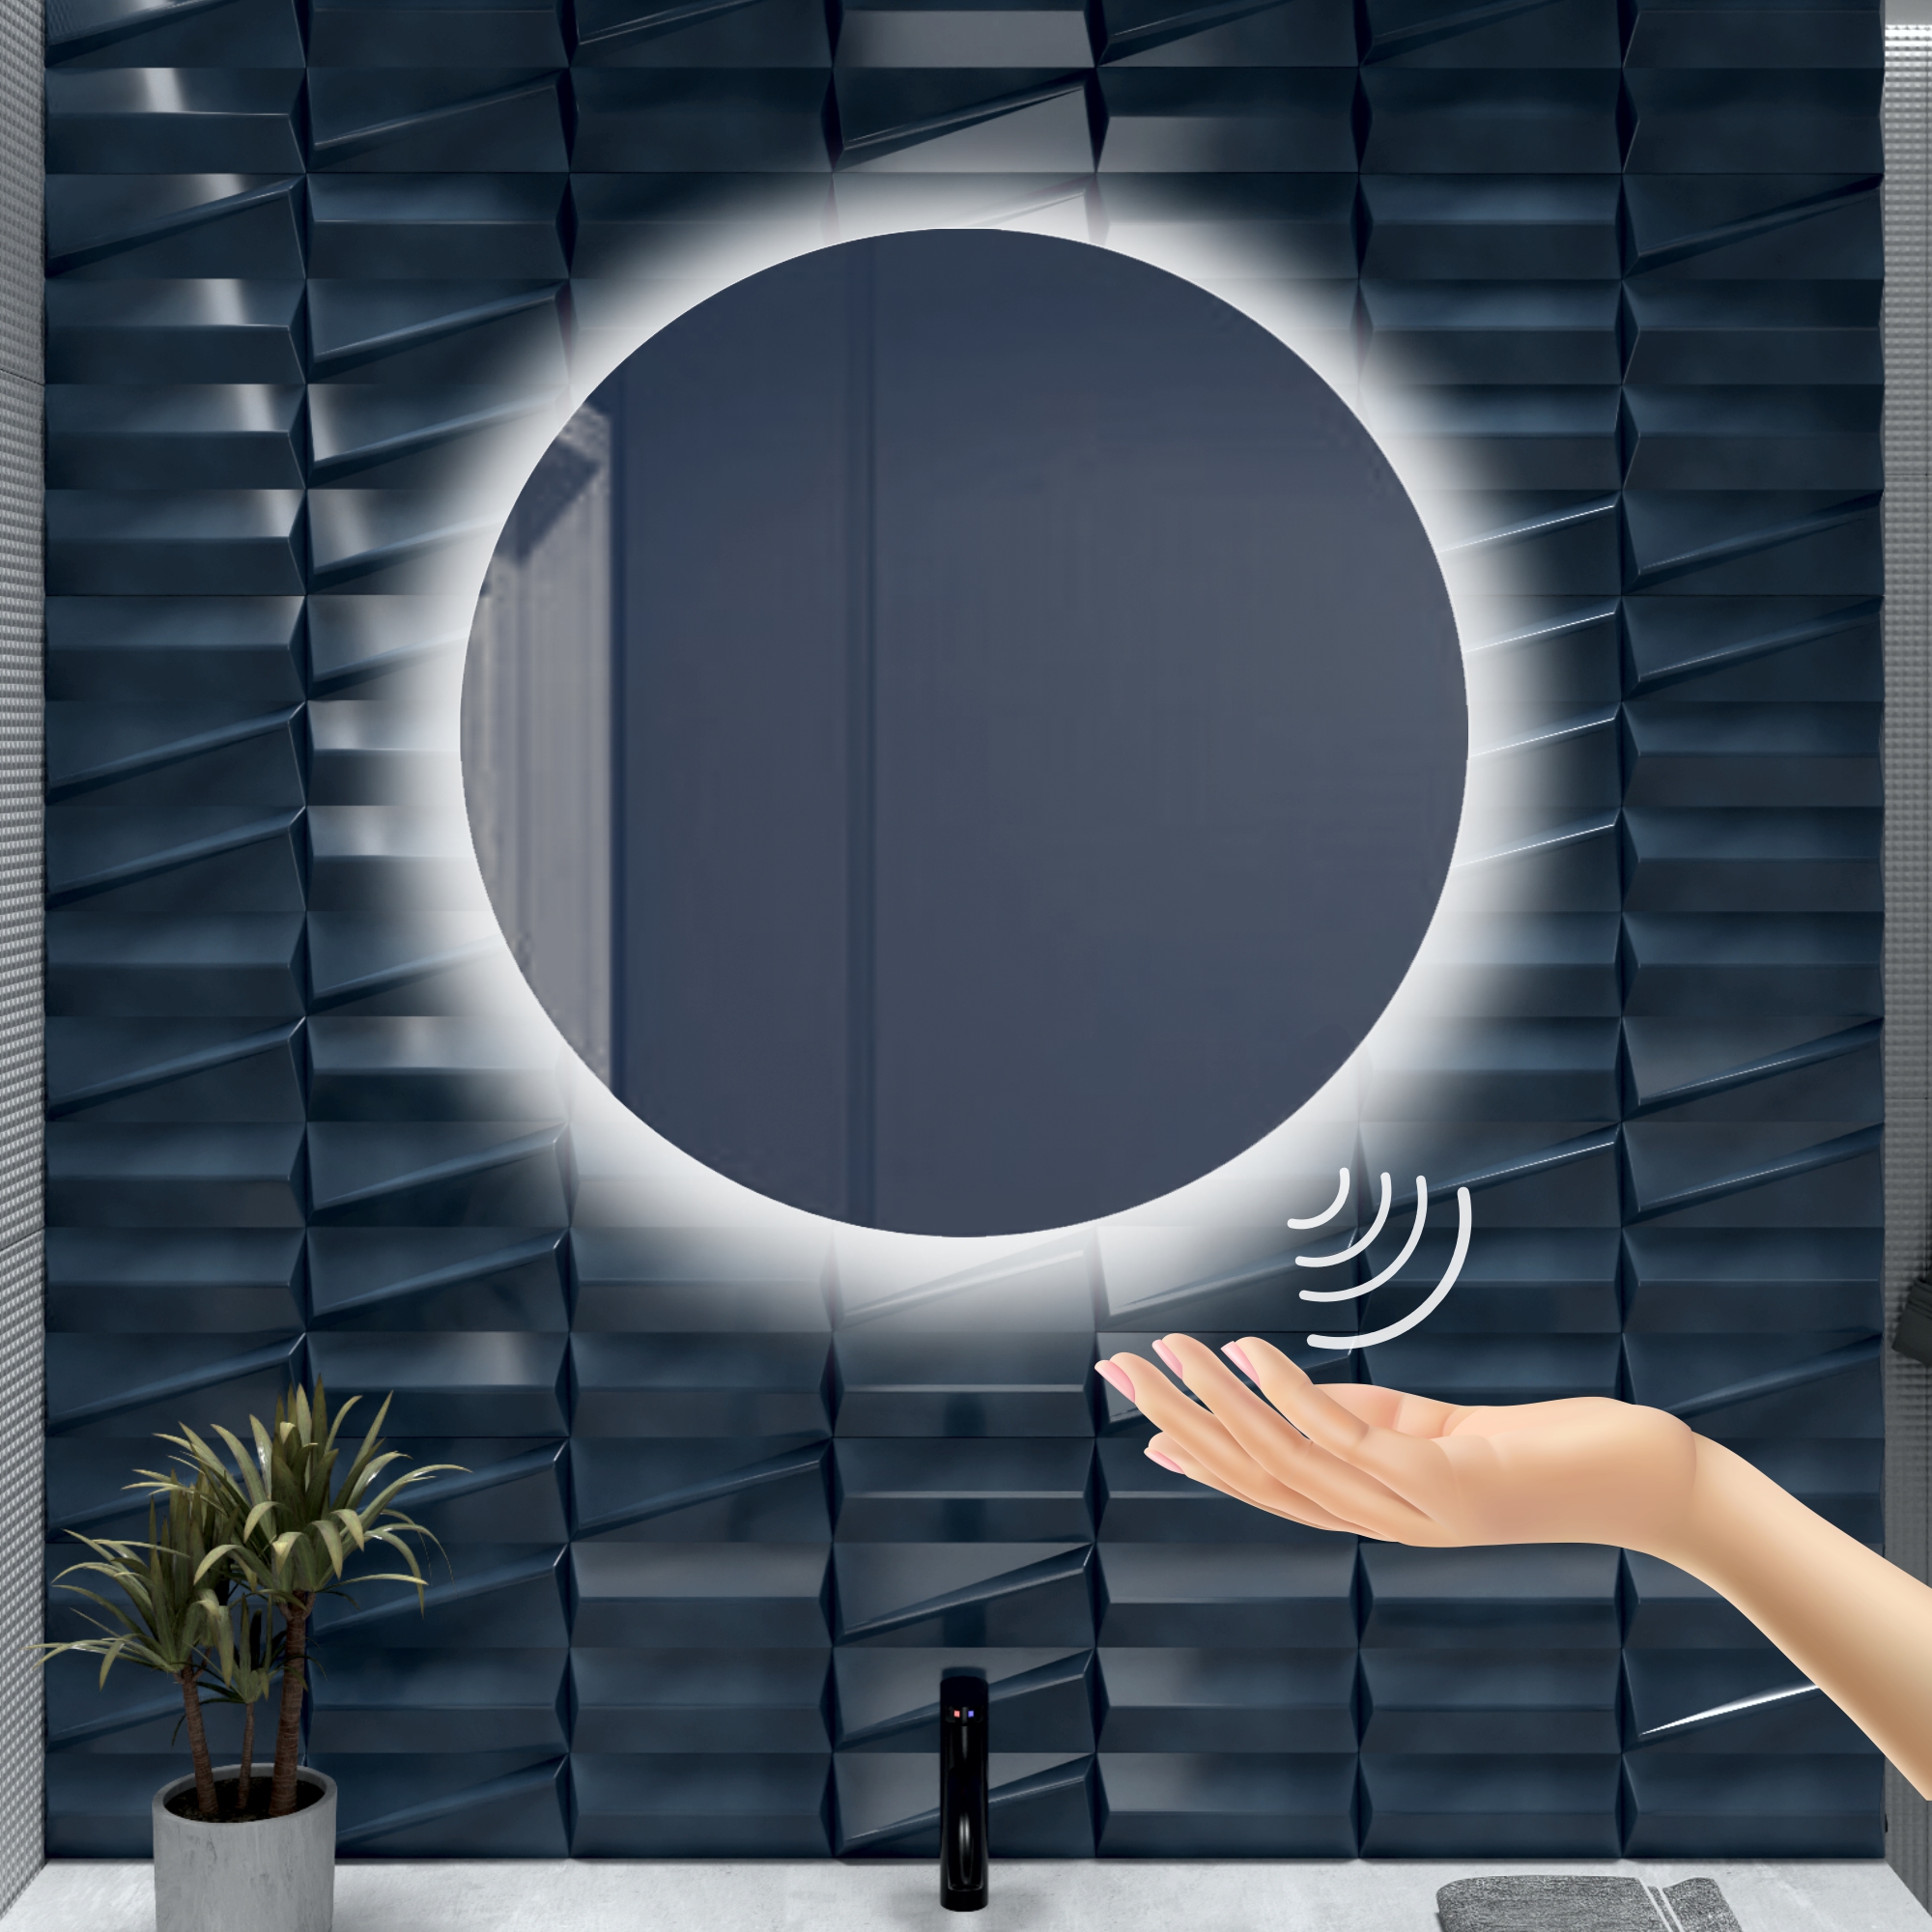 Зеркало для ванной Alfa Mirrors с холодной подсветкой 6500К круглое 70см, арт. Na-7Vzd зеркало для ванной alfa mirrors с холодной подсветкой 6500к круглое 40см арт na 4vzh